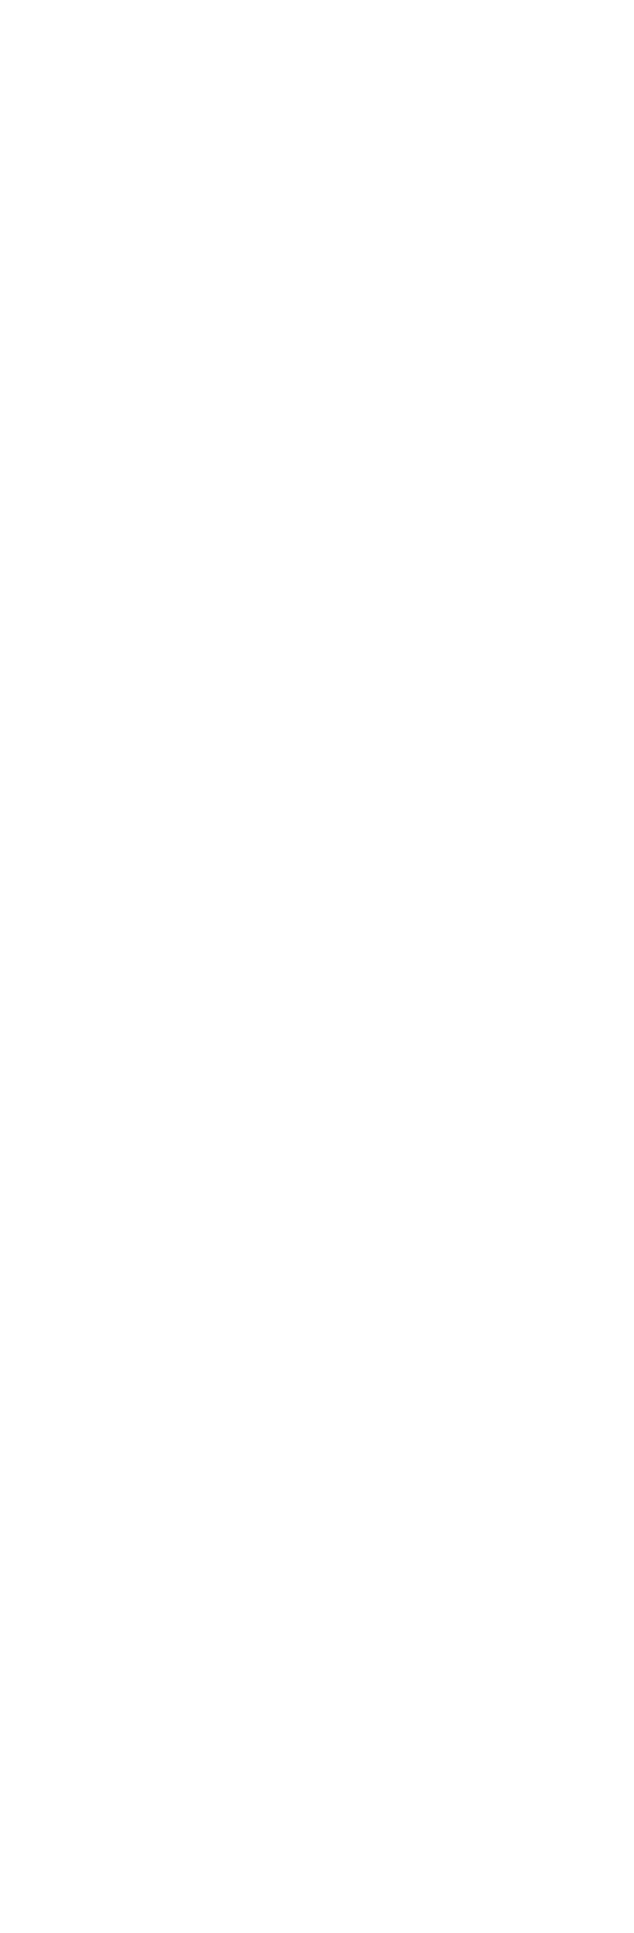 pattern-image